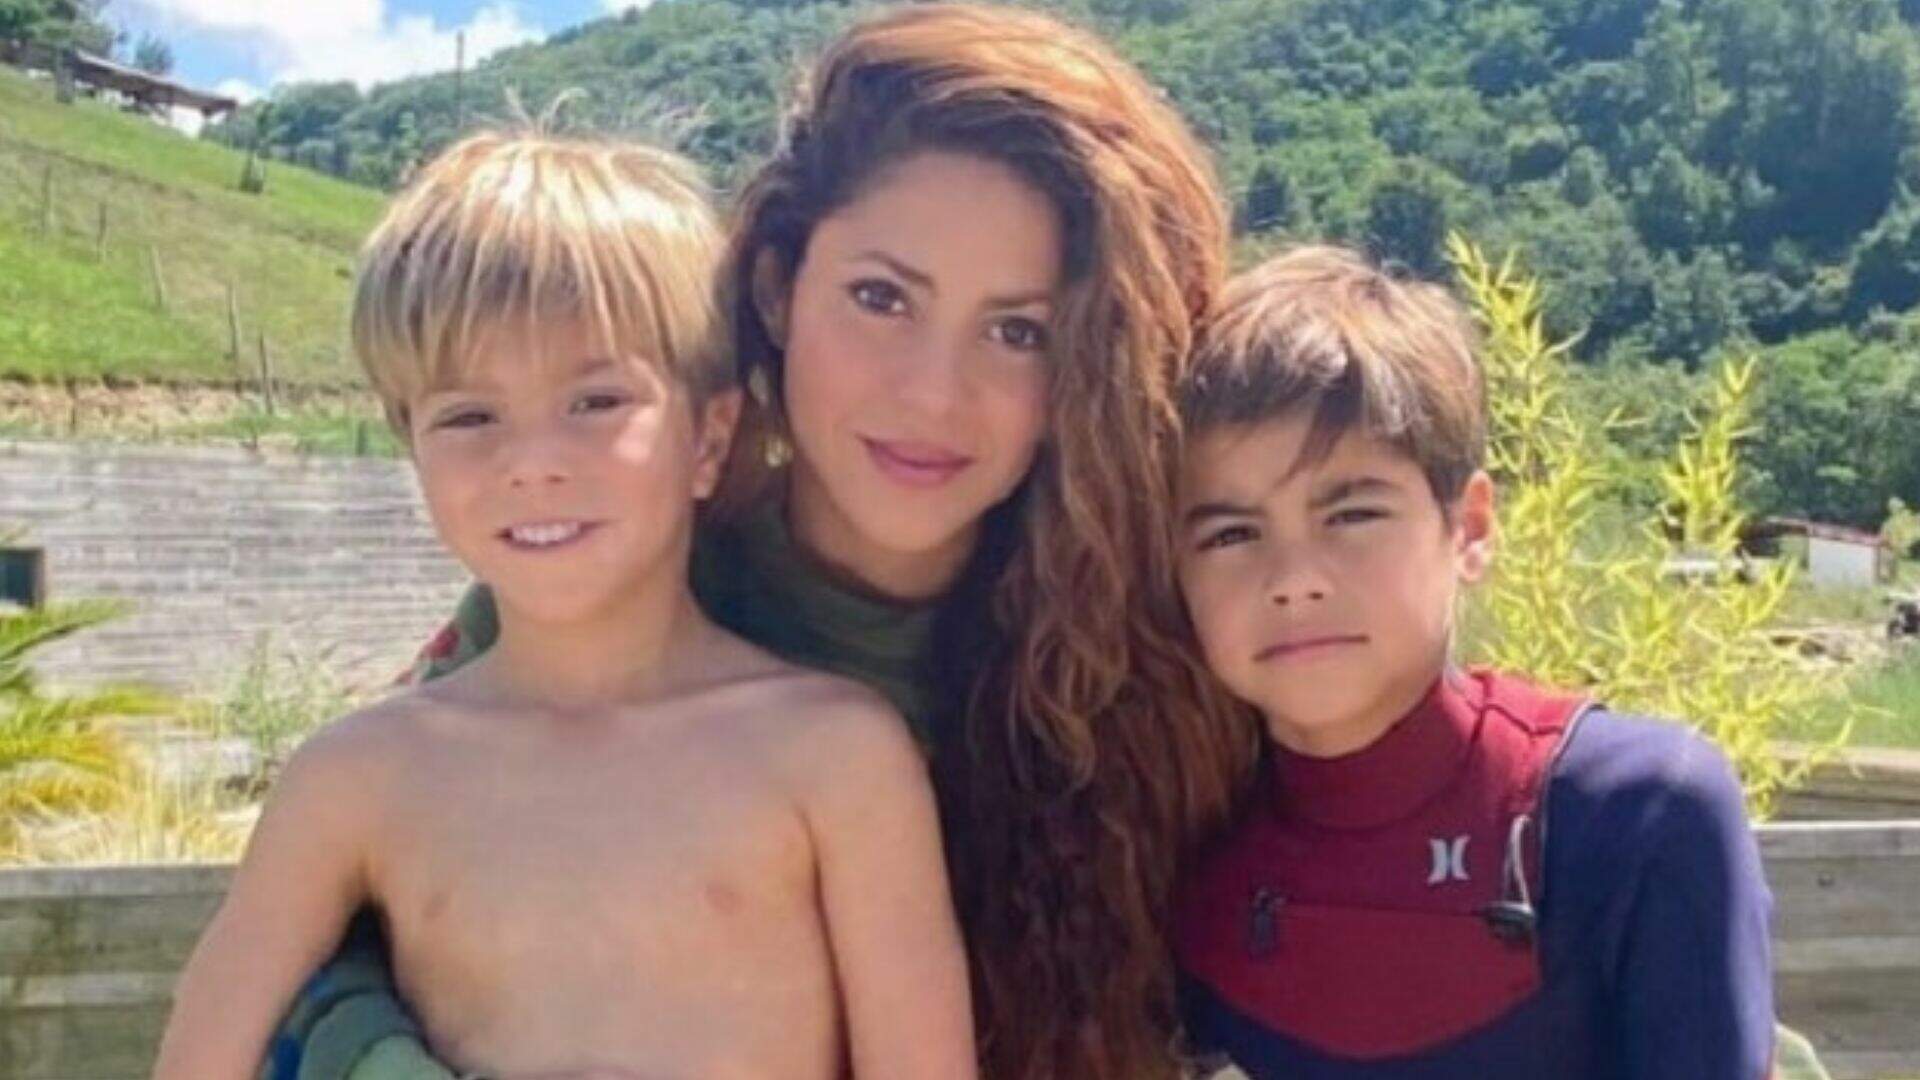 Após divórcio polêmico, Shakira pede privacidade em nome dos filhos: “Perseguição” - Metropolitana FM